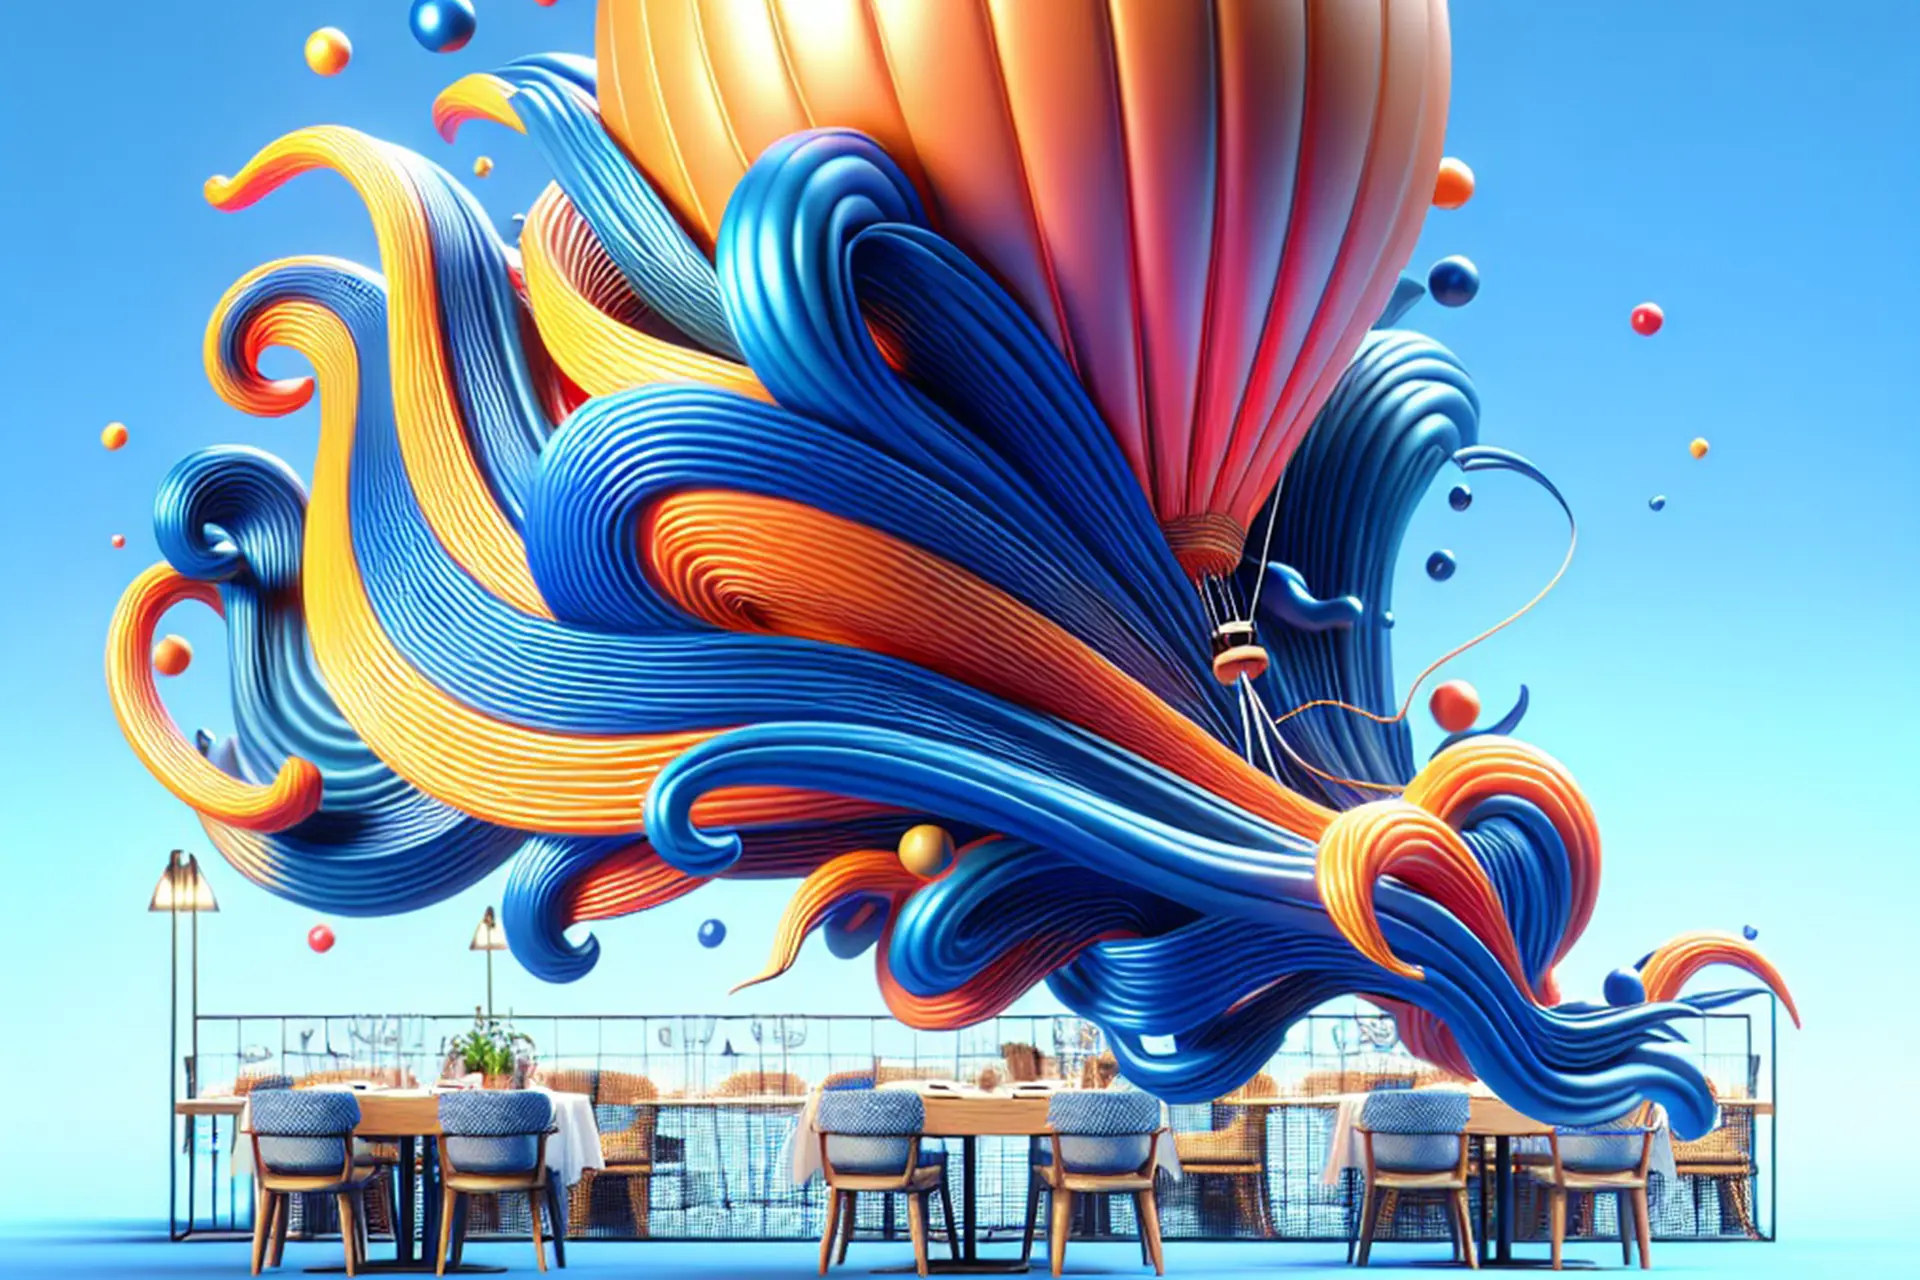 Table de restaurant moderne avec une décoration artistique en ballon et vagues colorées